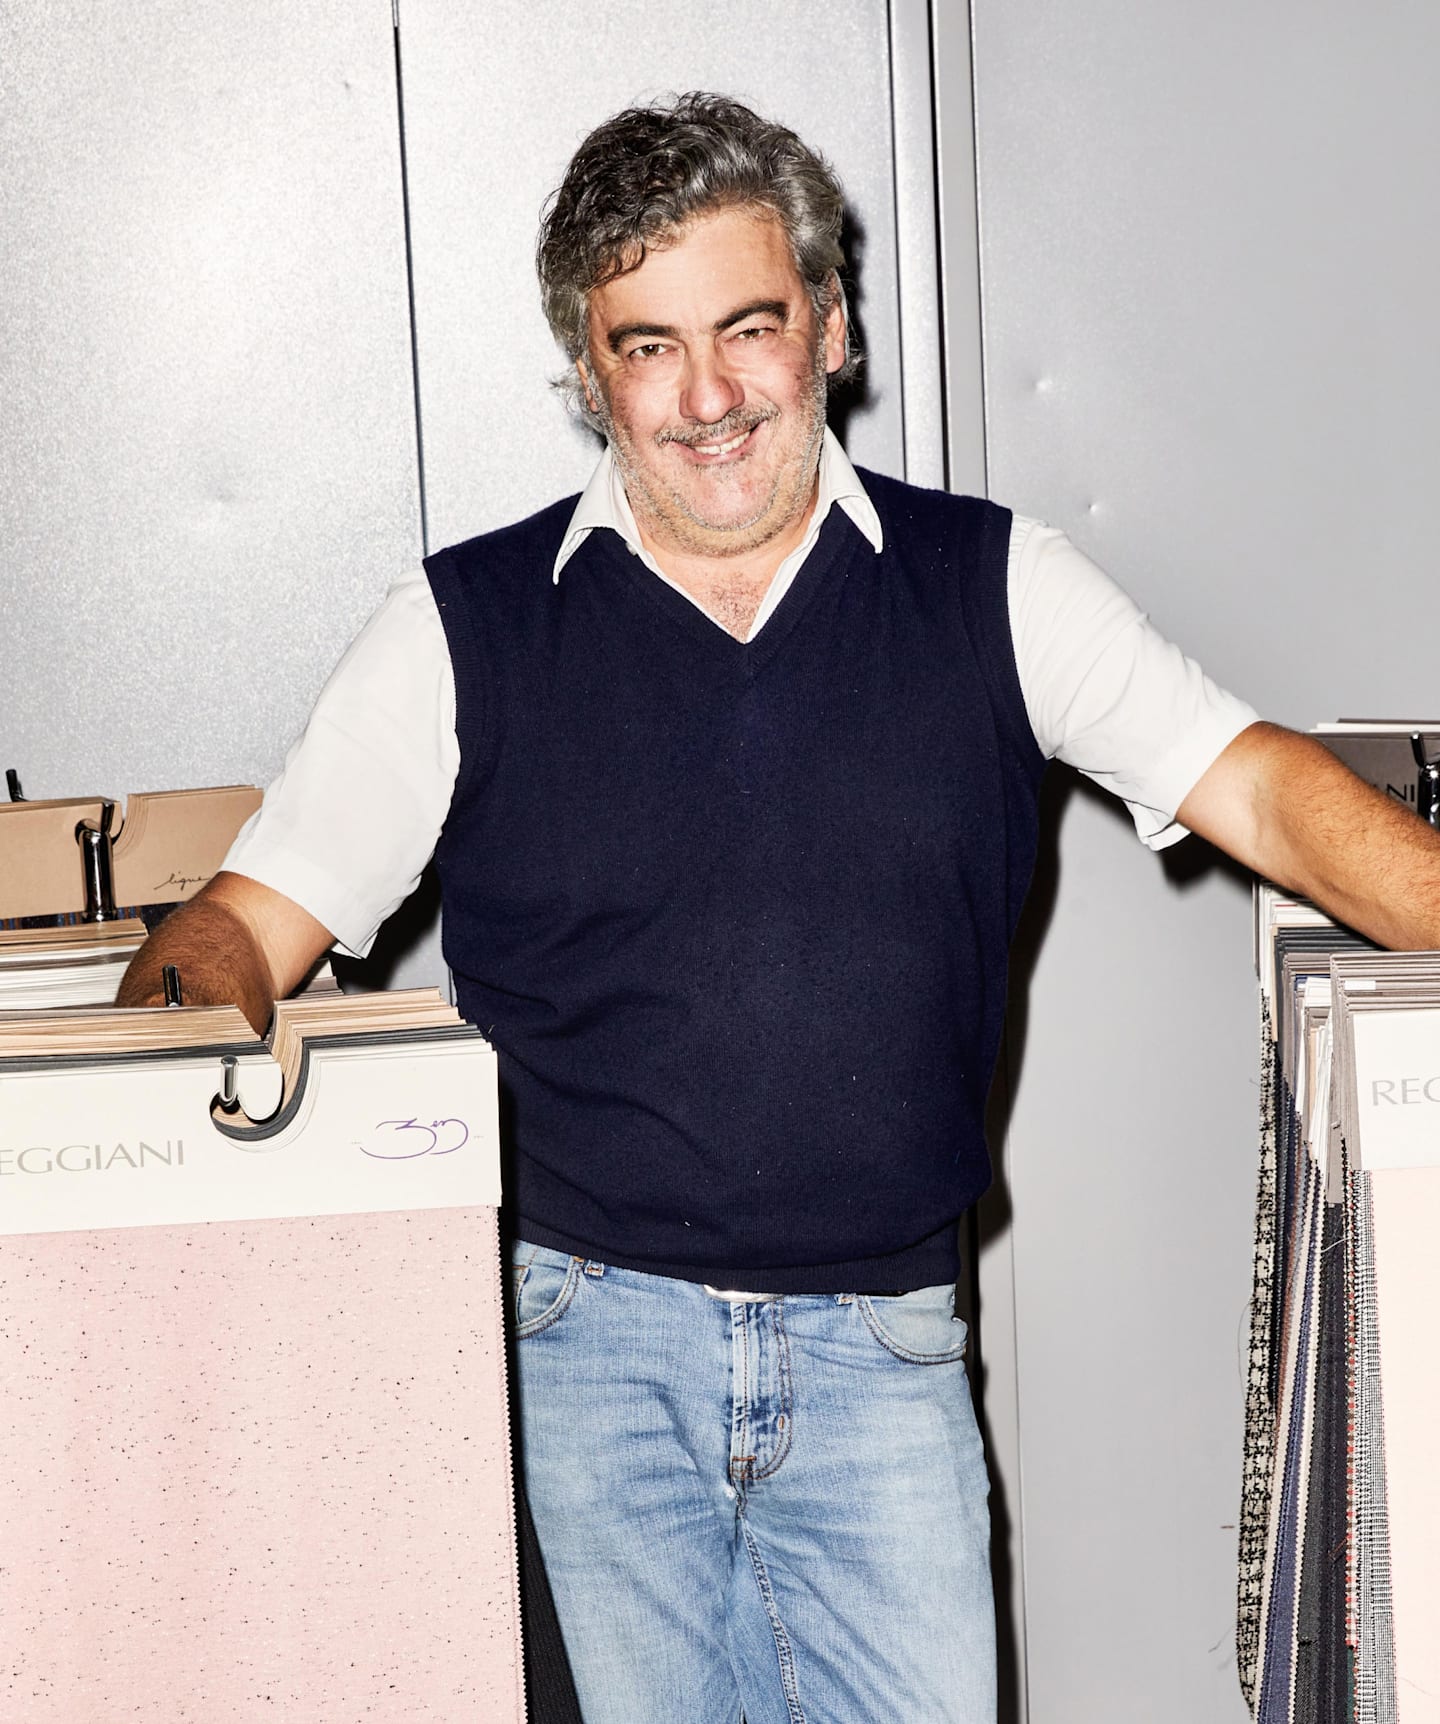 Giovanni Reggiani, CEO, designer, and son of founder Attilio.